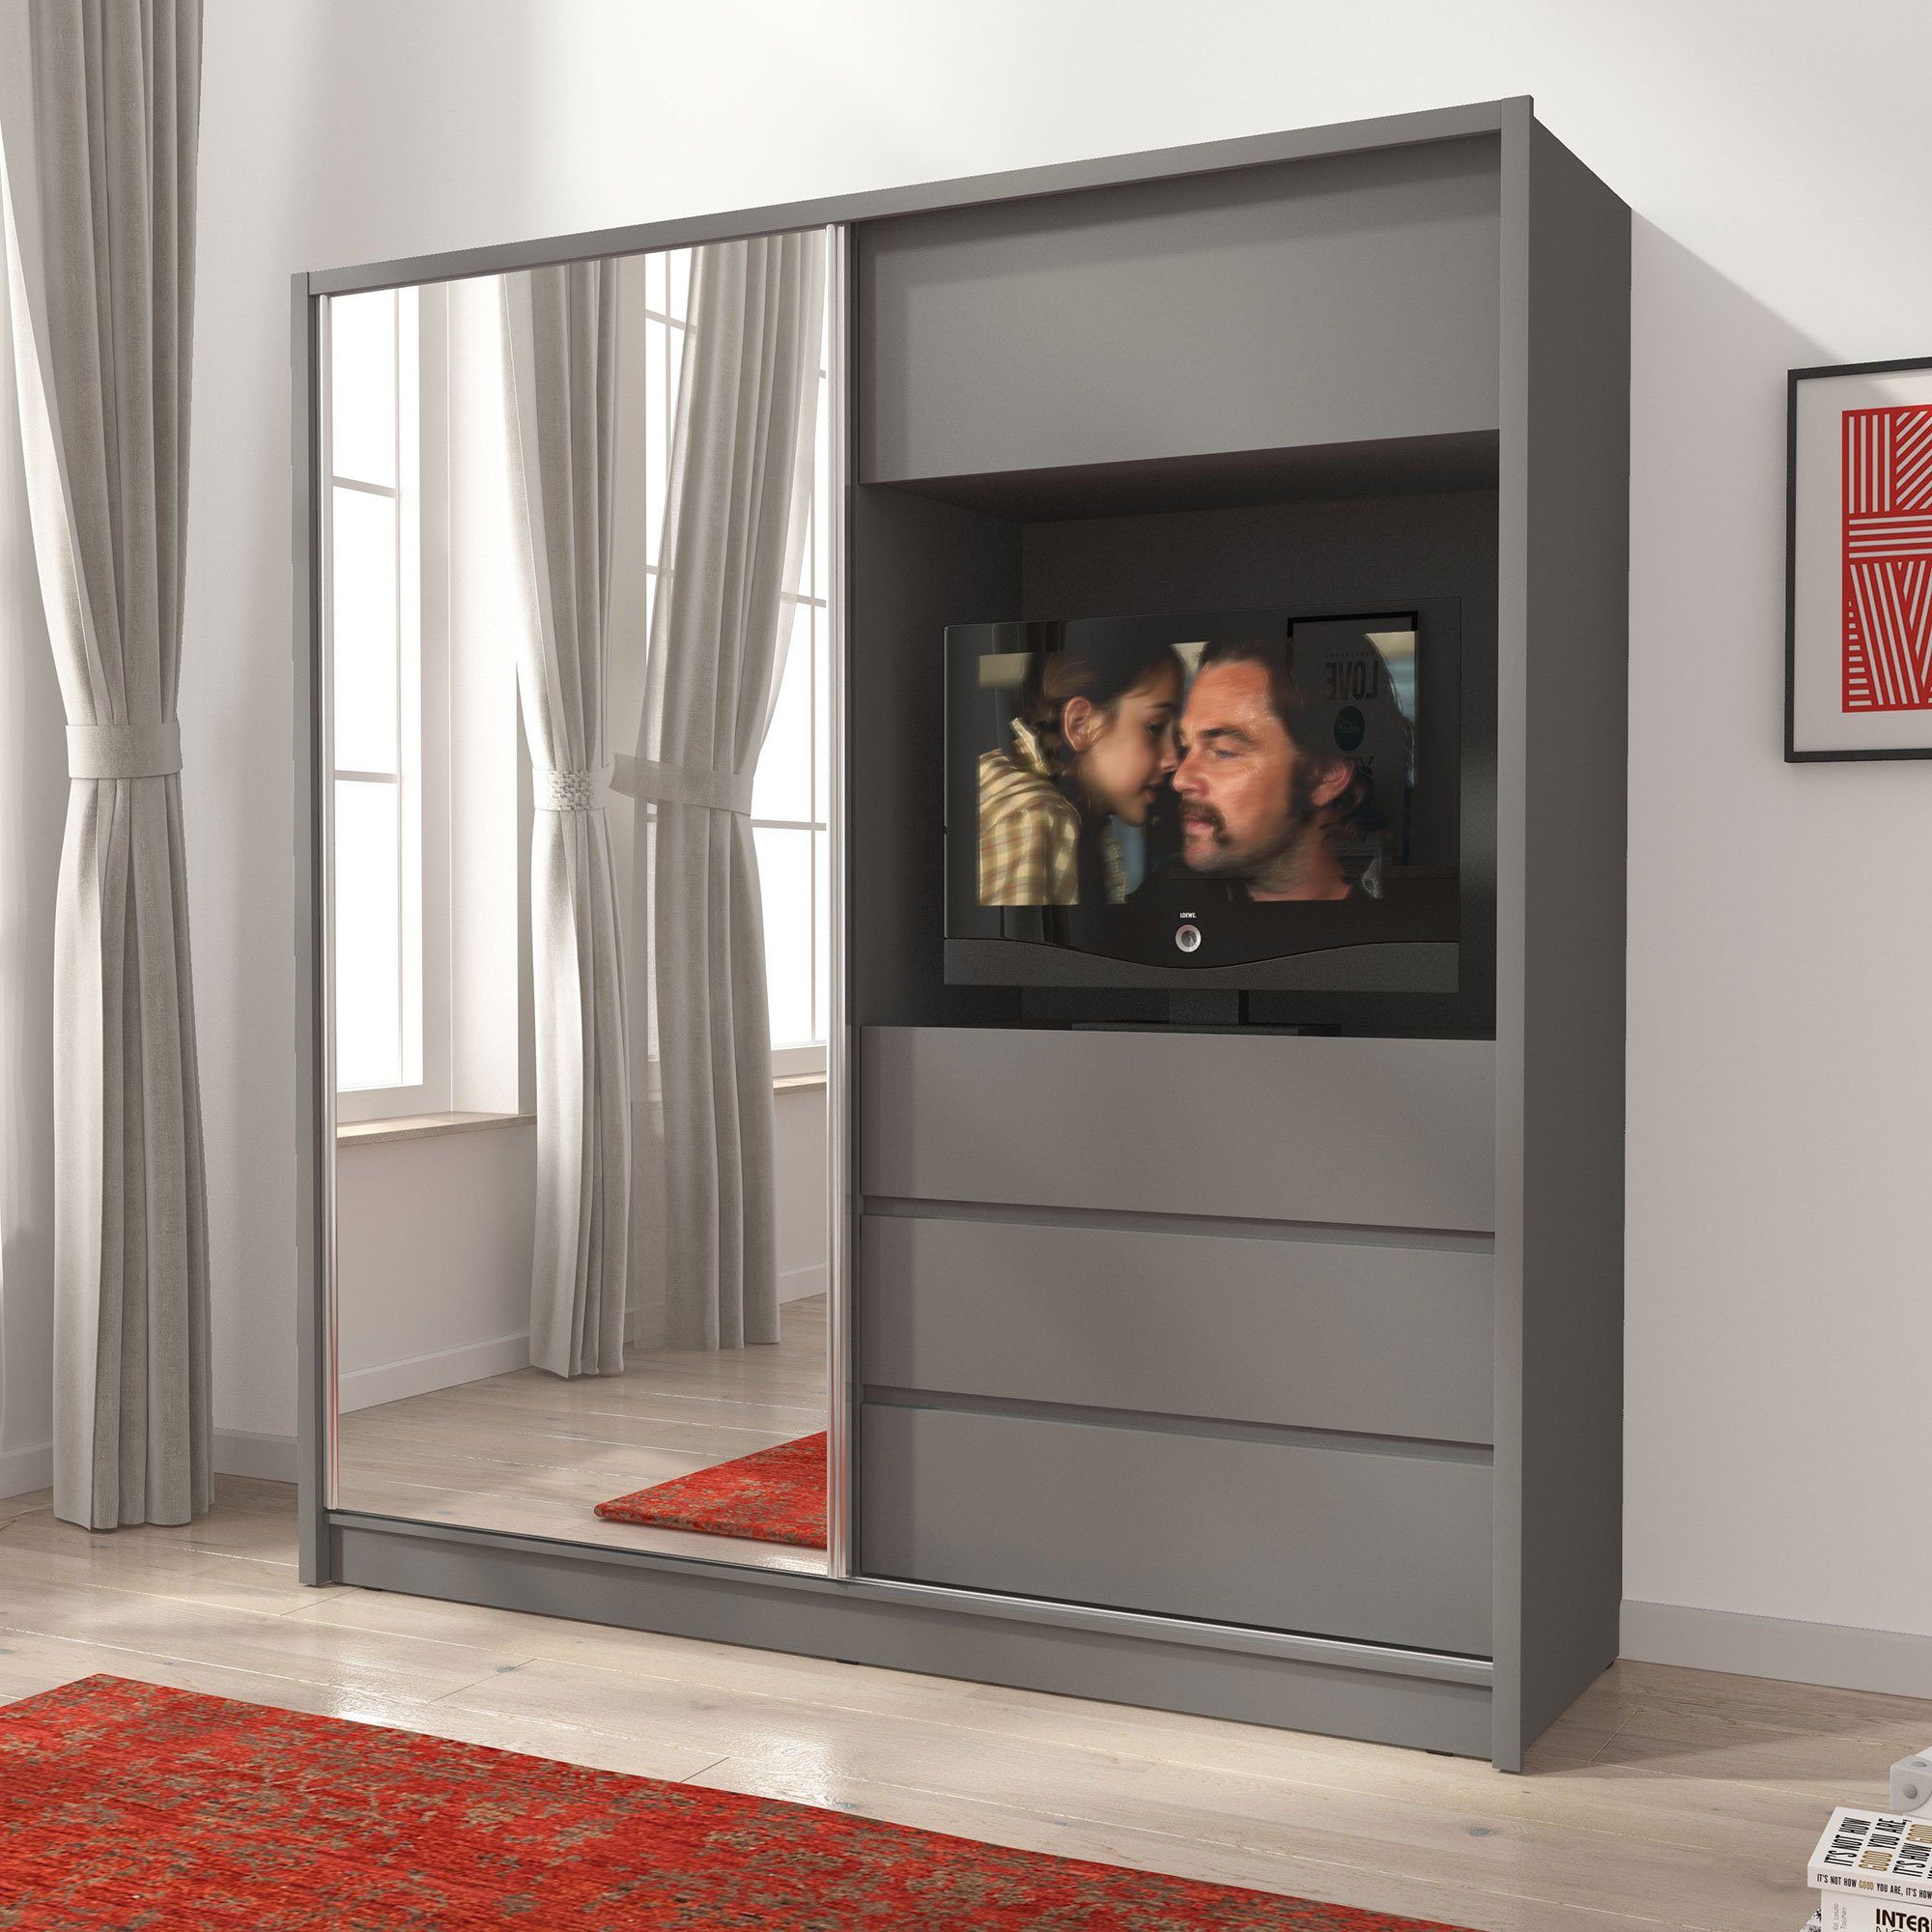 TV Baidani Grau Cosmo Vorrichtung Kleiderschrank Luxusbetten24 Schrank mit